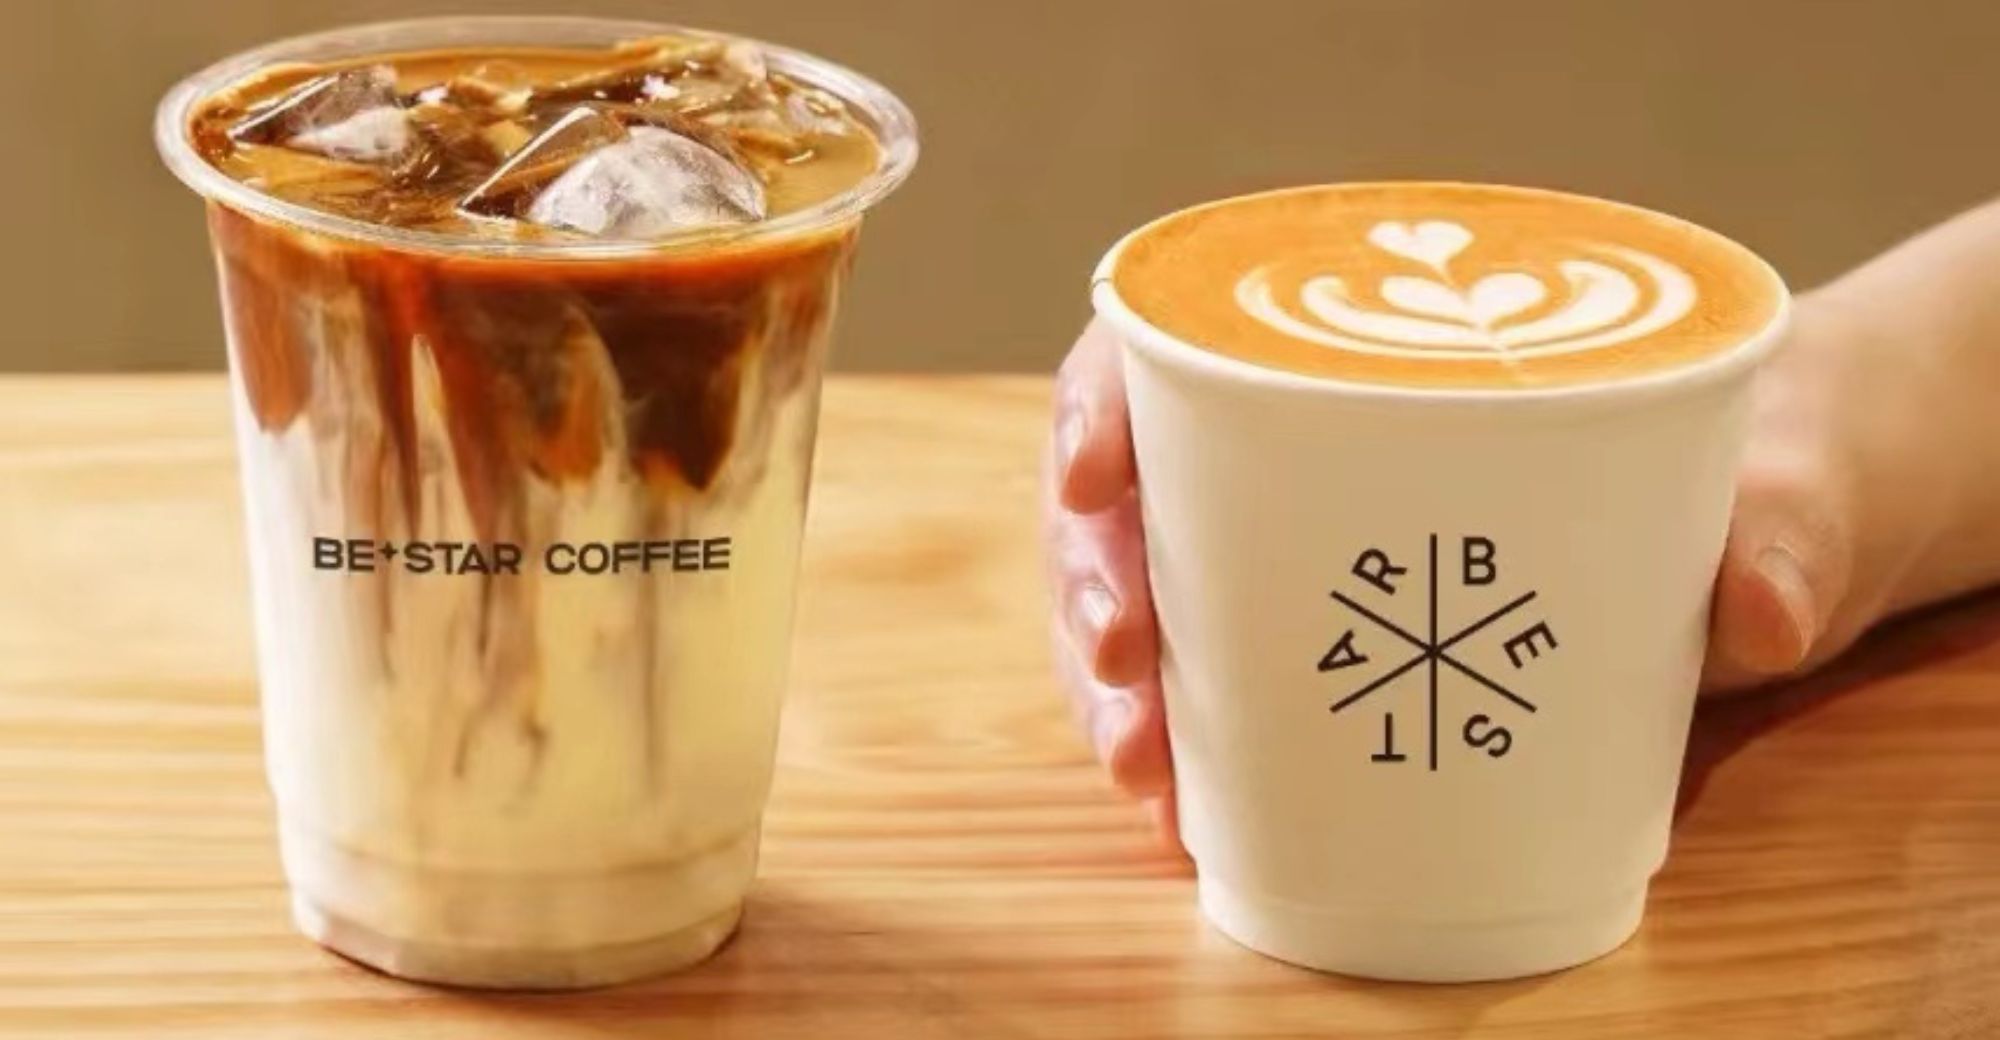 سلسلة القهوة الصينية الجديدة Bestar Coffee تؤمن الملايين من التمويل المستدير